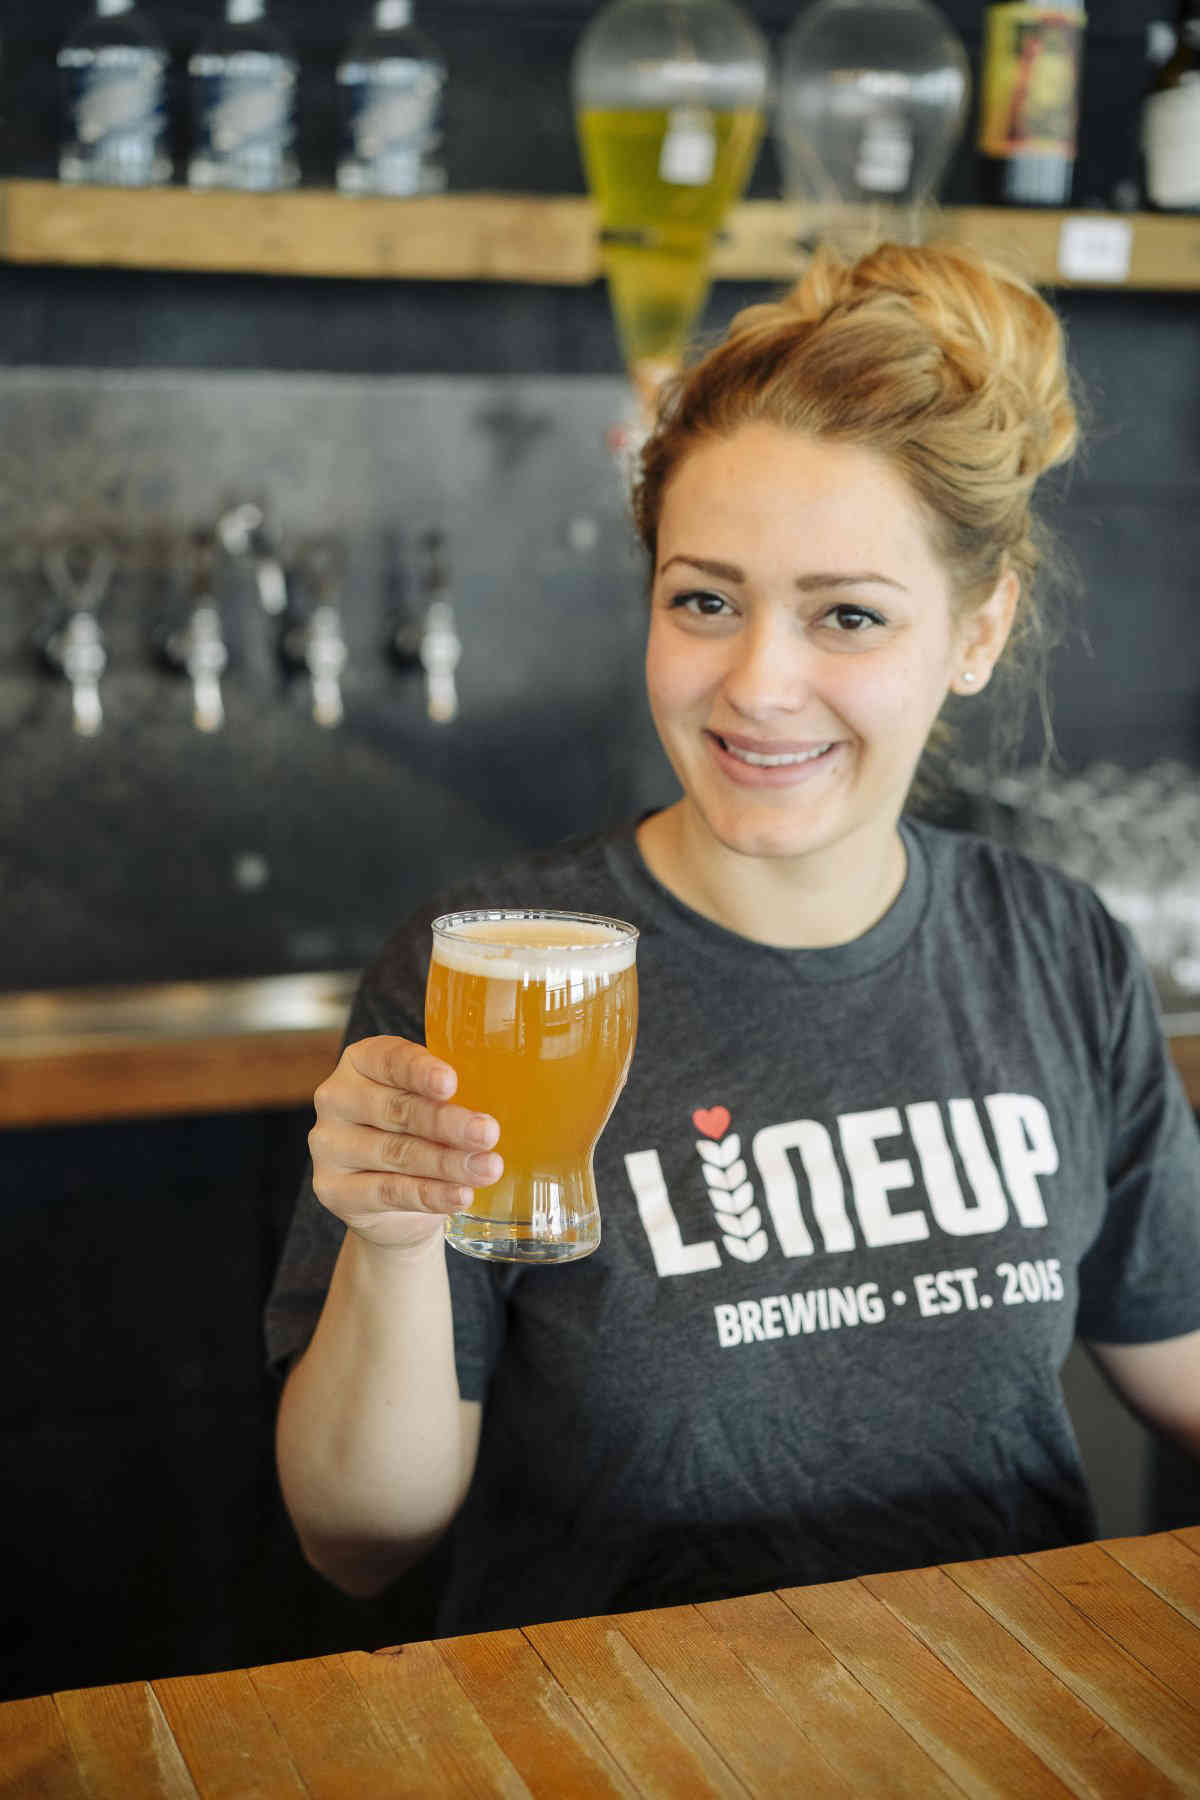 Beer-ded ladies: Homebrew competition seeks women brewers